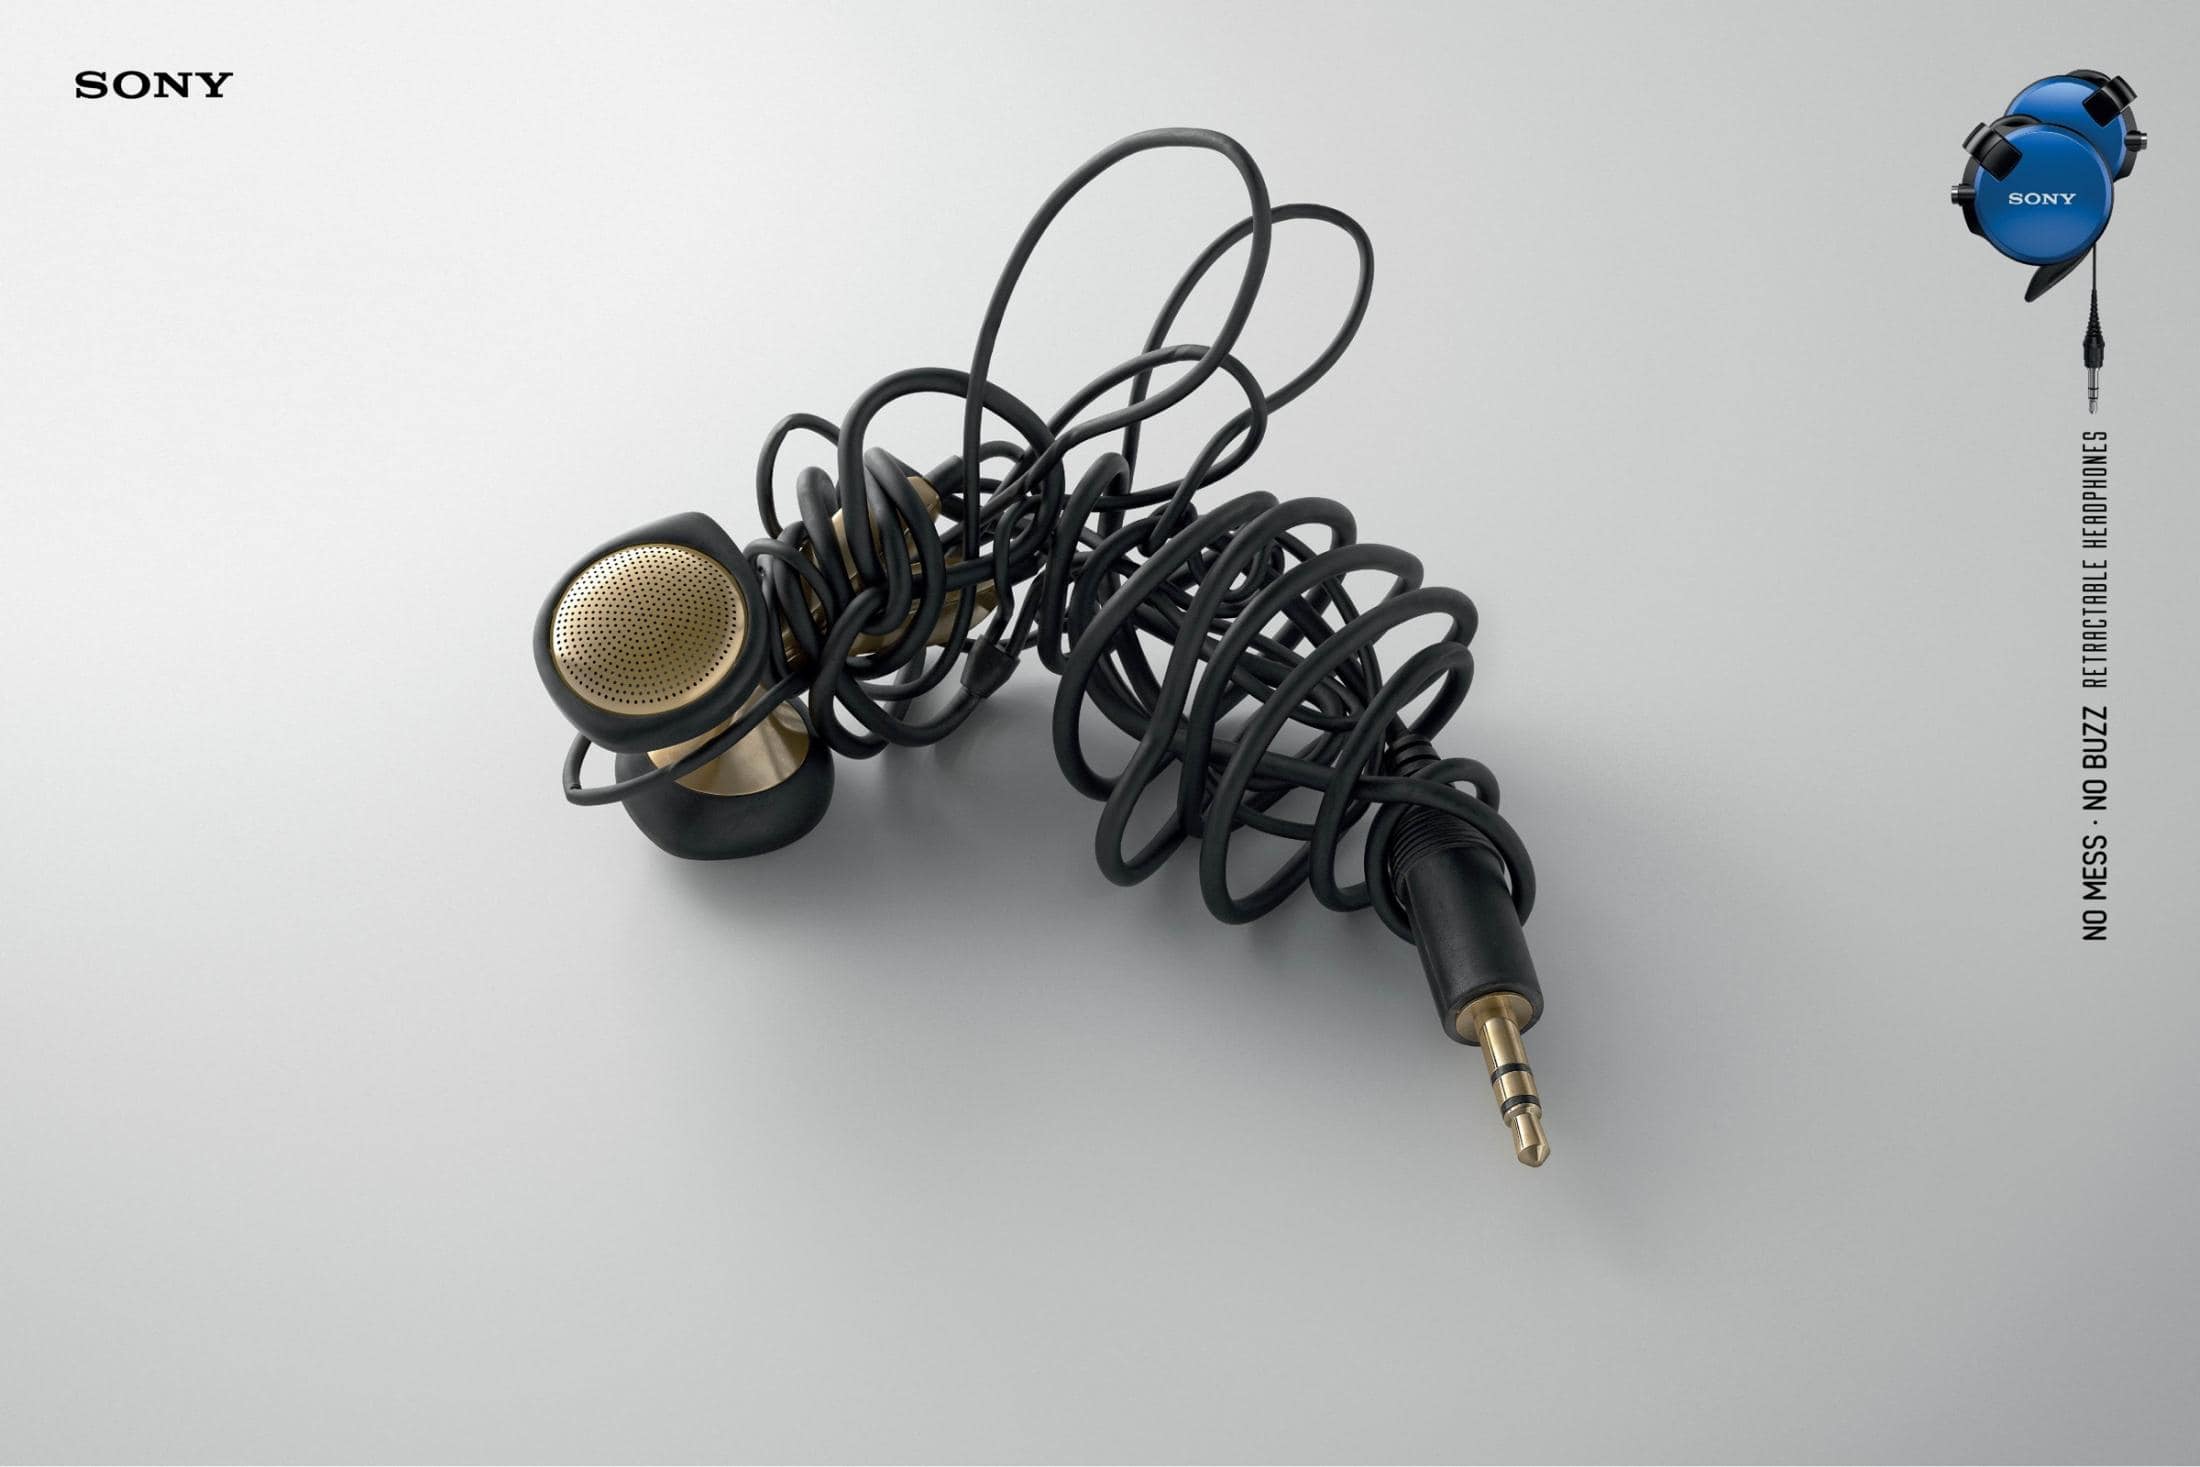 소니헤드폰 광고 2015 Sony-retractable-cord-headphones-no-mess-no-buzz